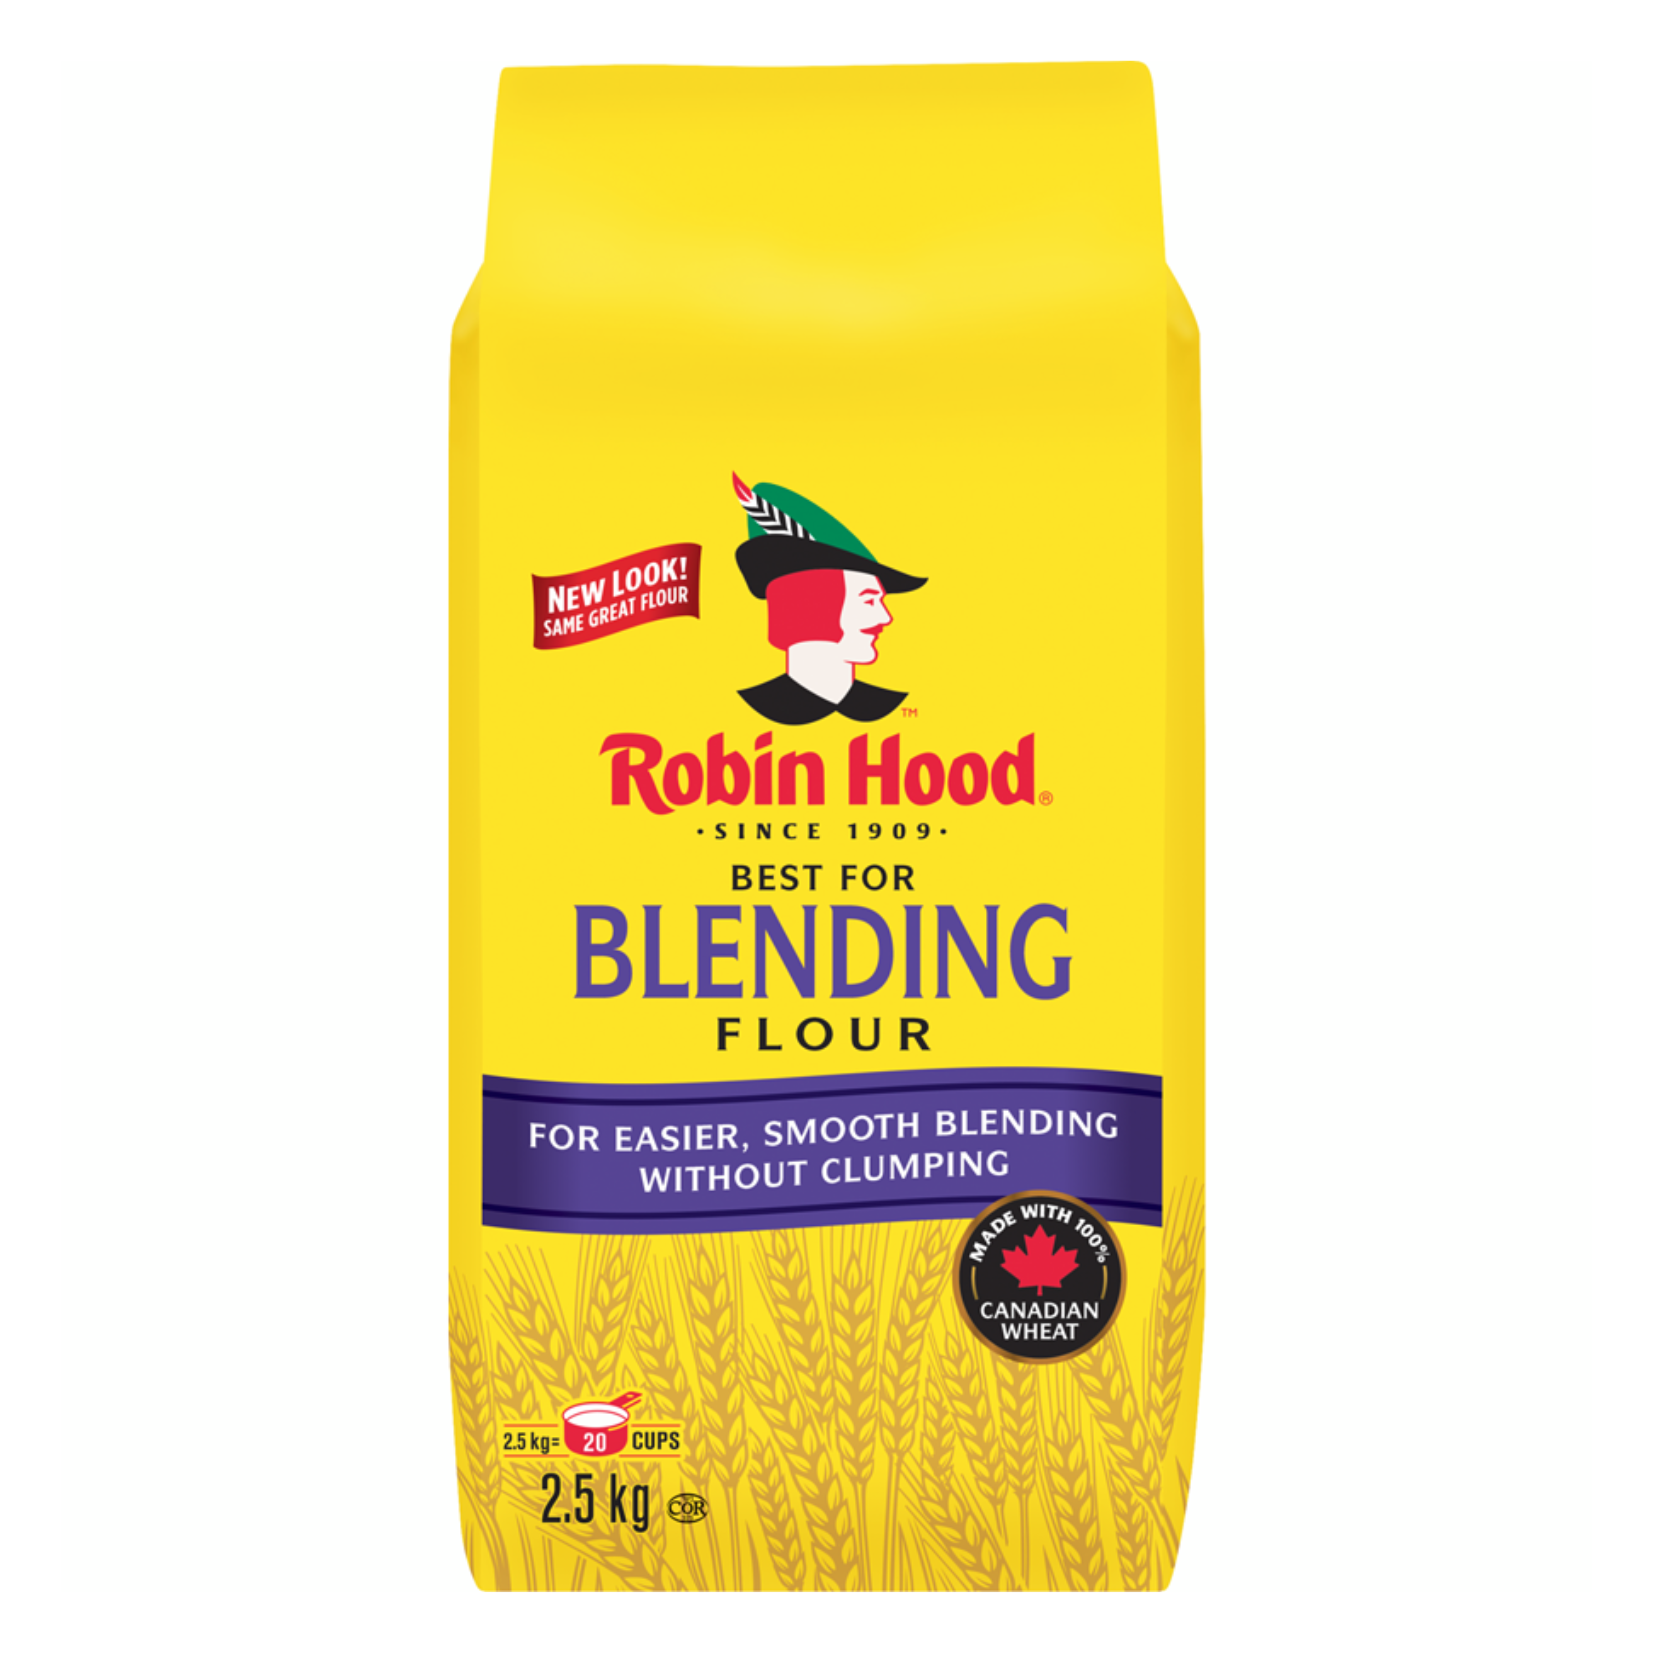 Robin Hood Blending Flour 2.5kg